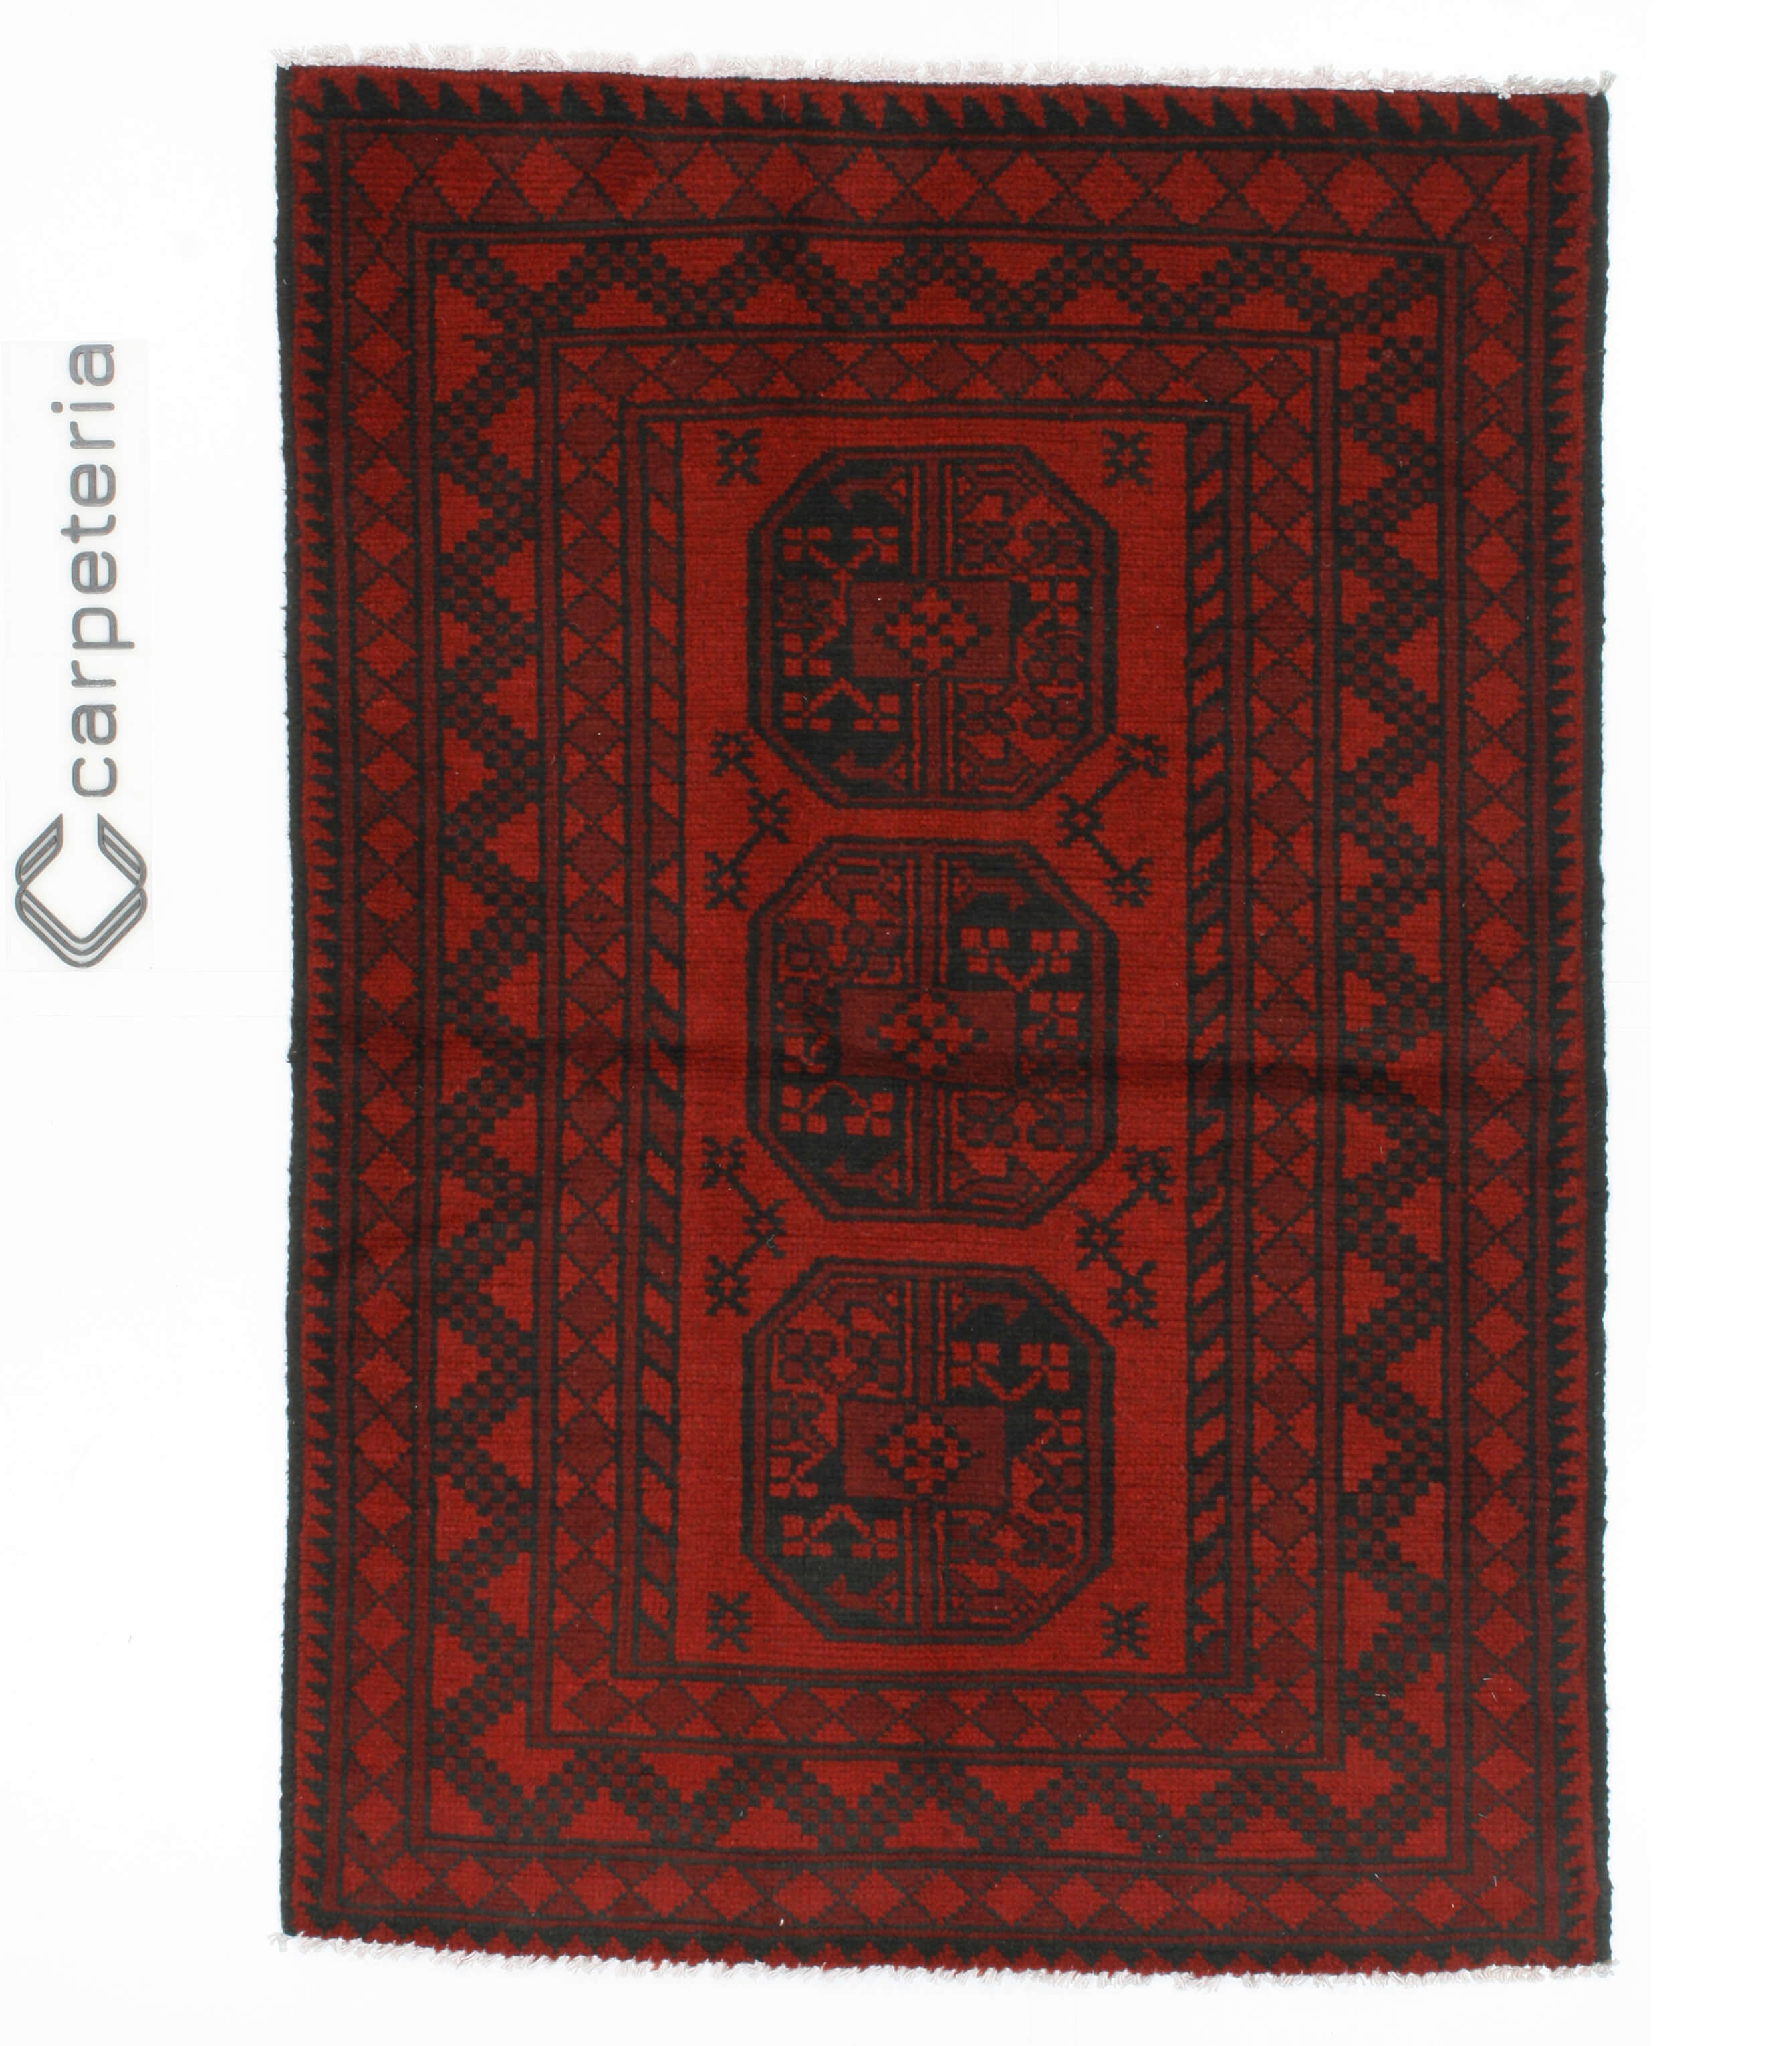 Oriental rug Afghan